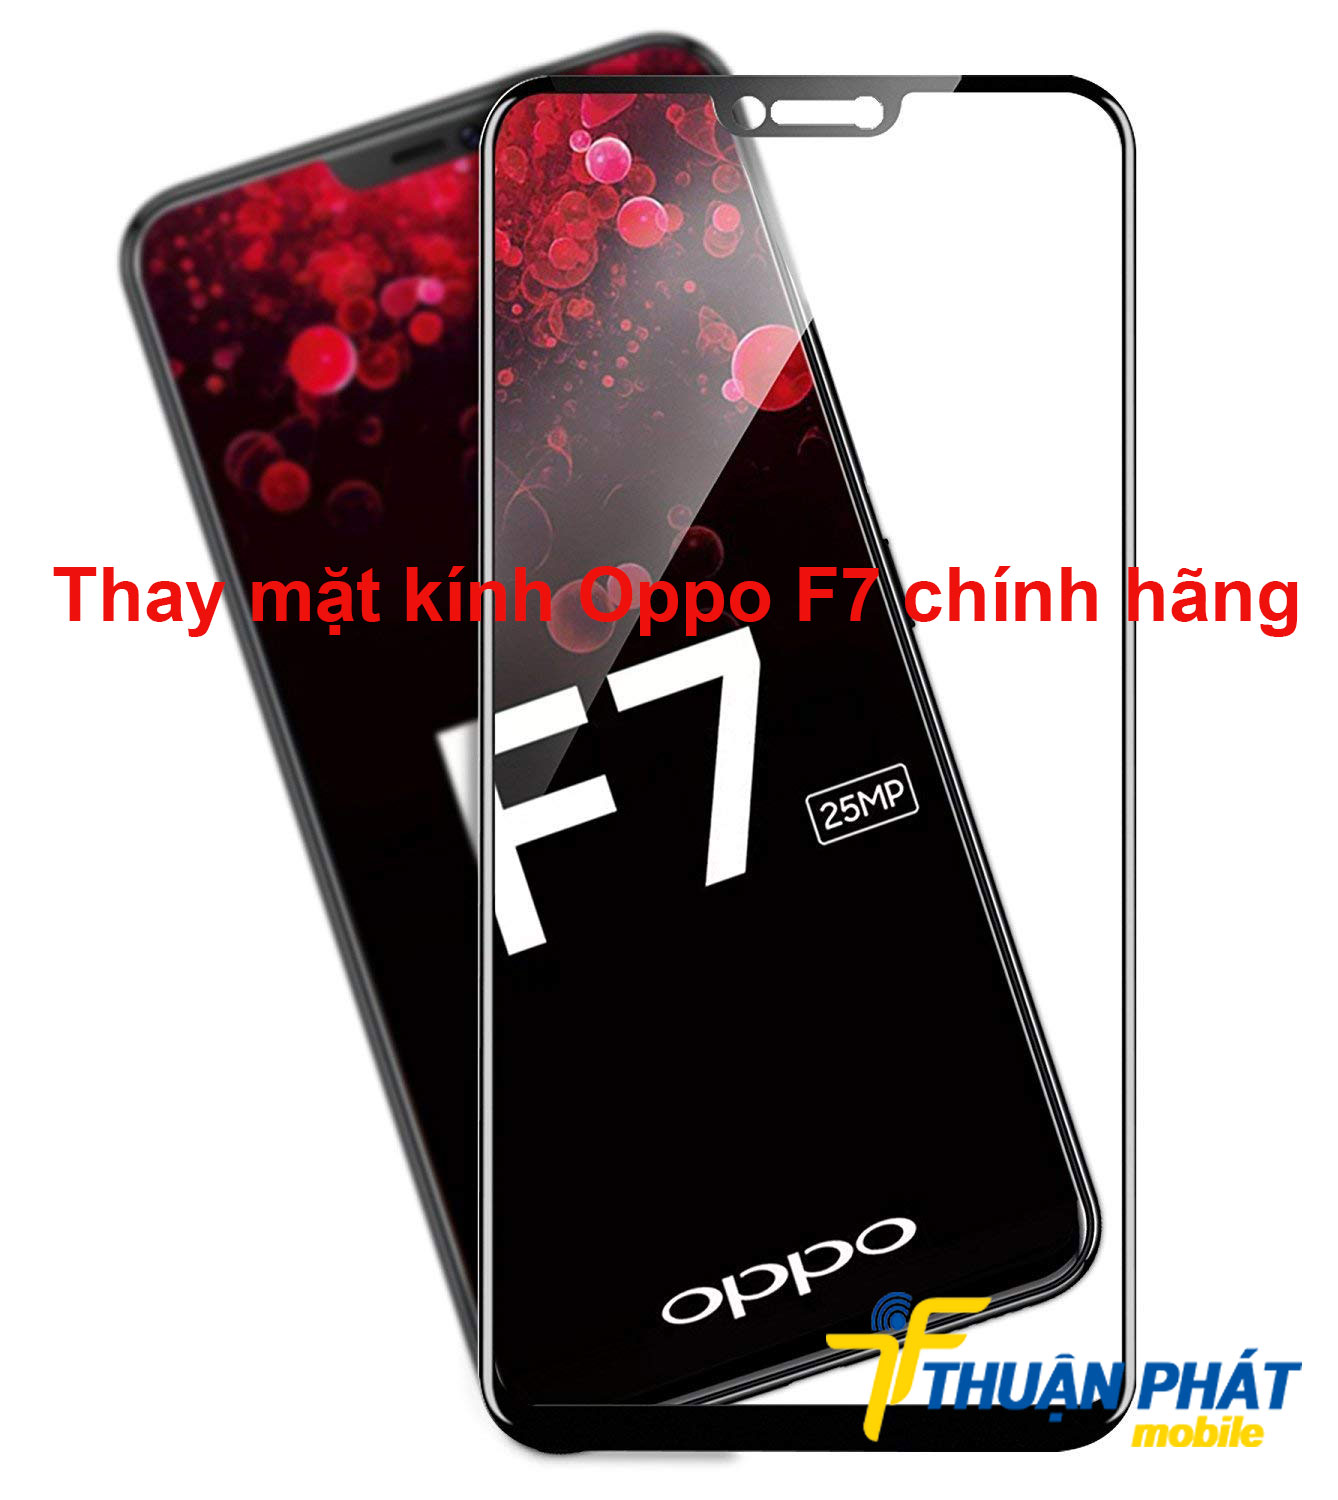 Thay mặt kính Oppo F7 chính hãng